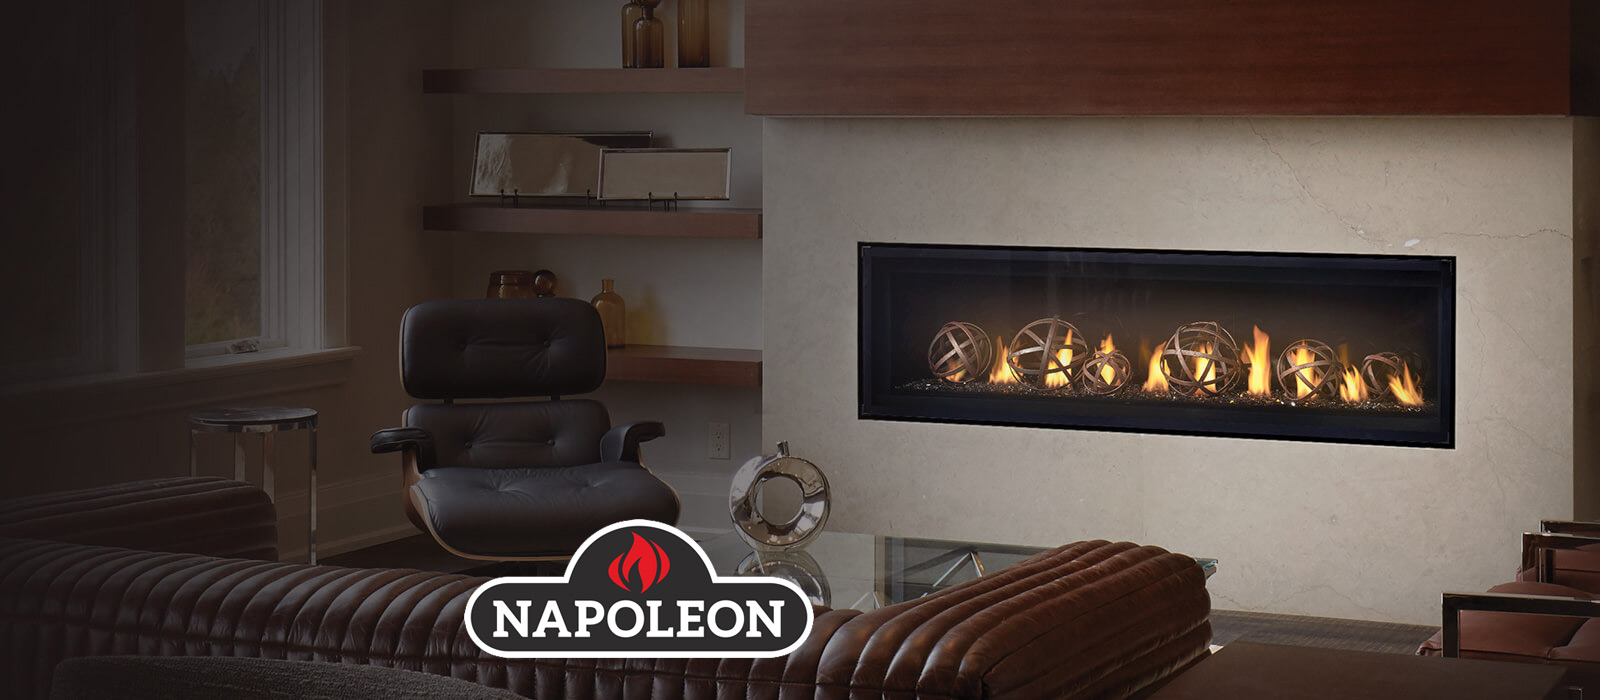 Napoleon Gas Fireplaces